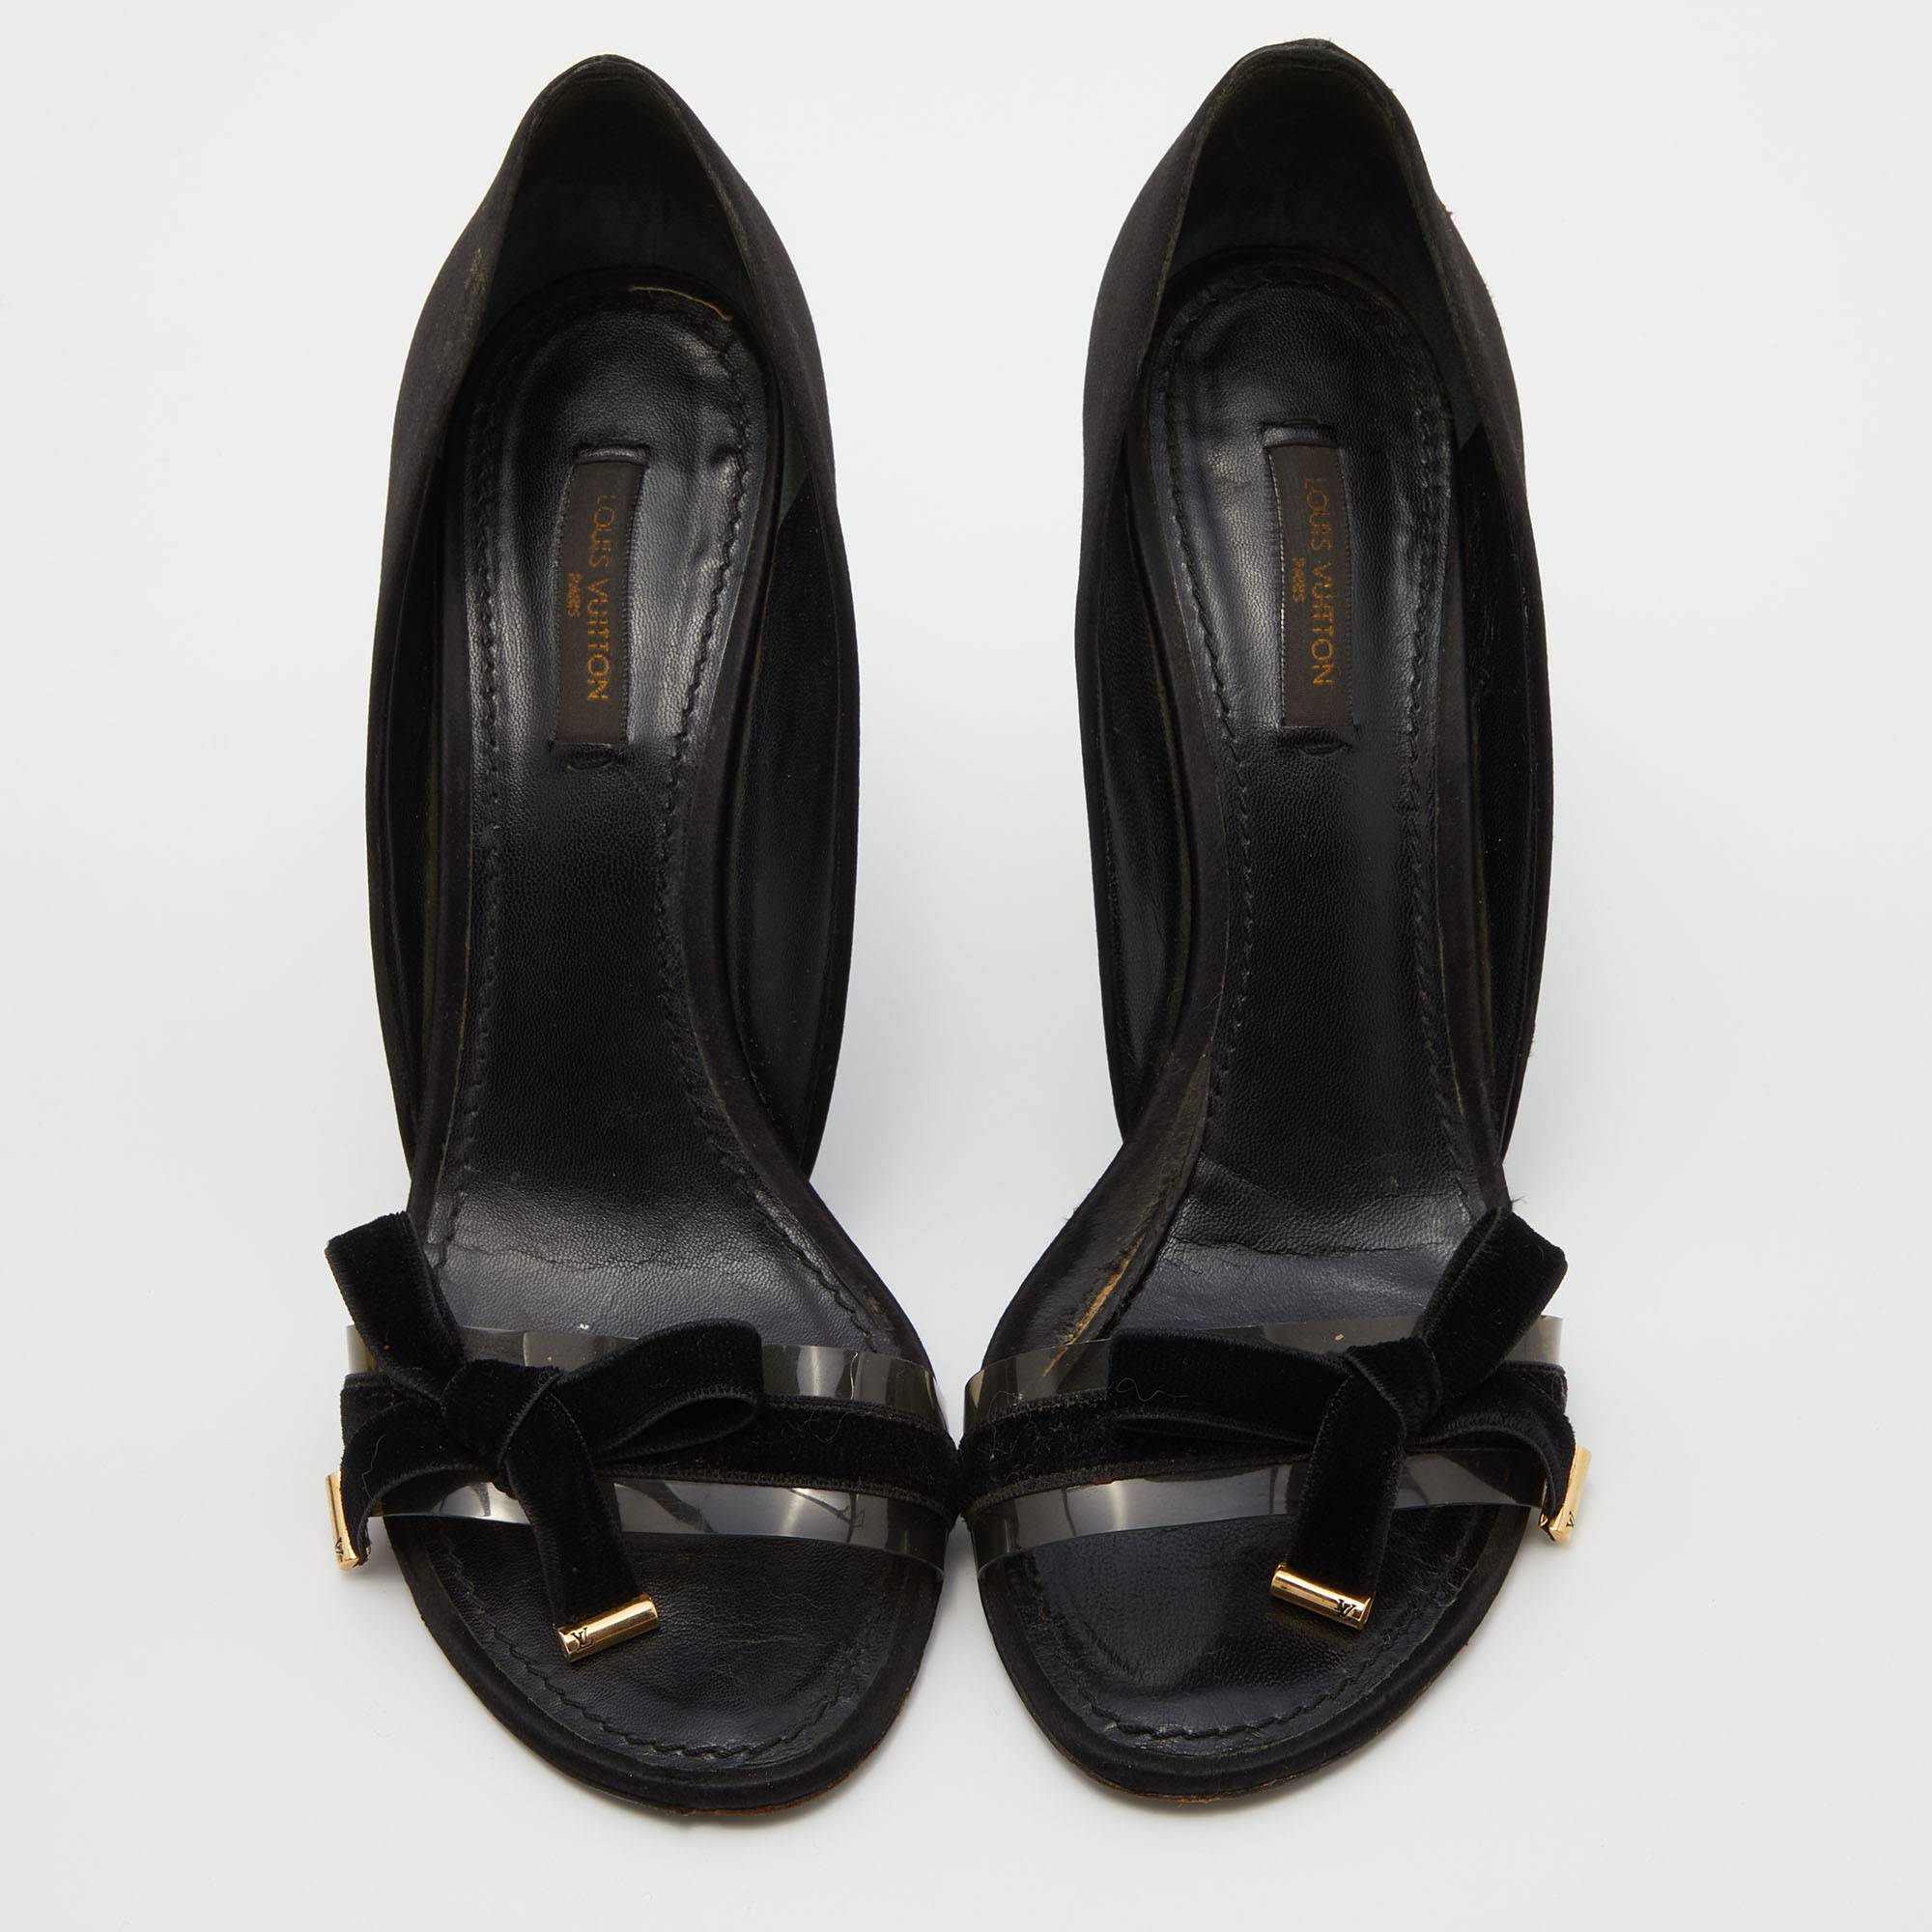 Louis Vuitton Black Satin And PVC Bow D' Orsay Pumps Size 38